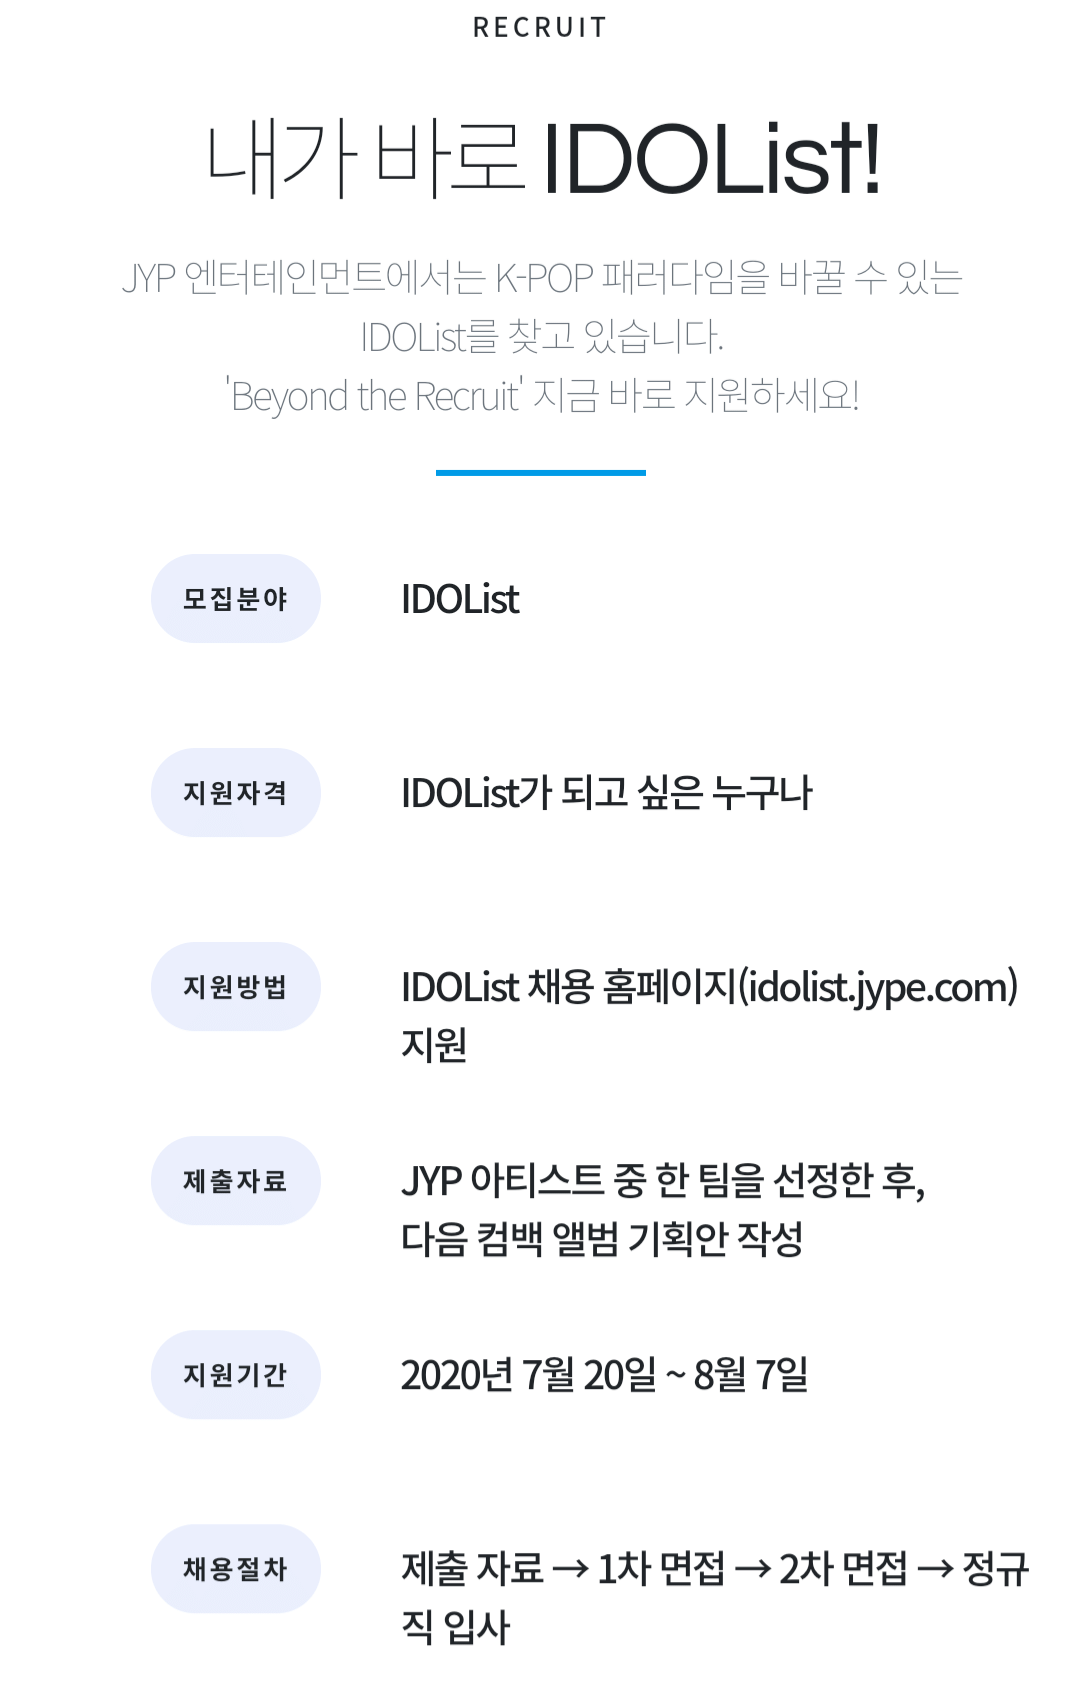 JYP의 <아이돌 전문가> 모집 공고 (정규직 채용)